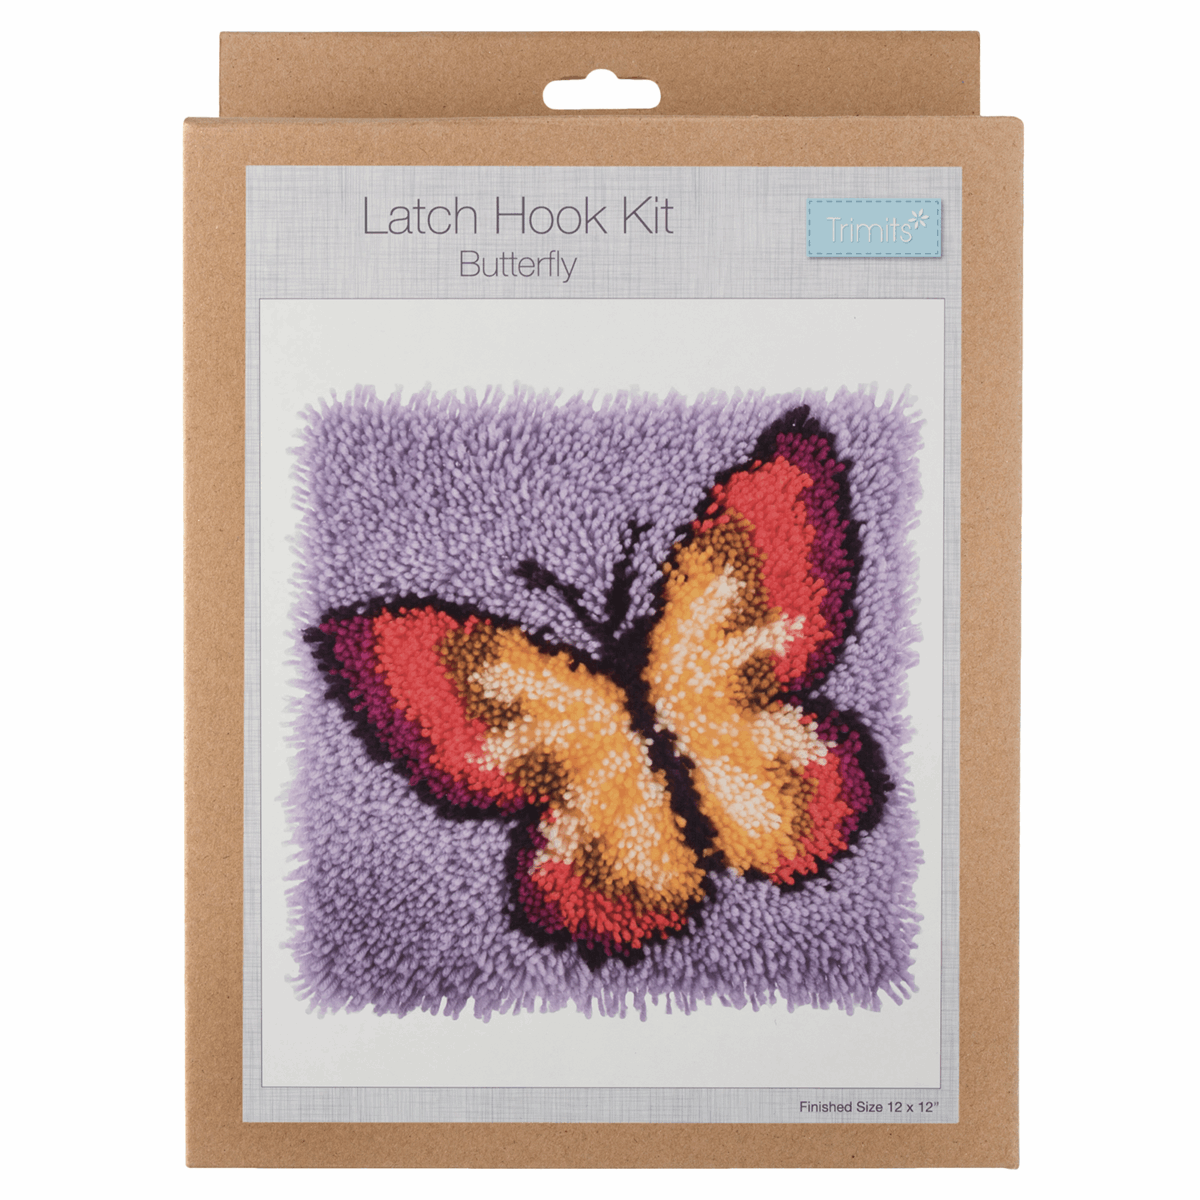 Latch Hook Kit - Butterfly